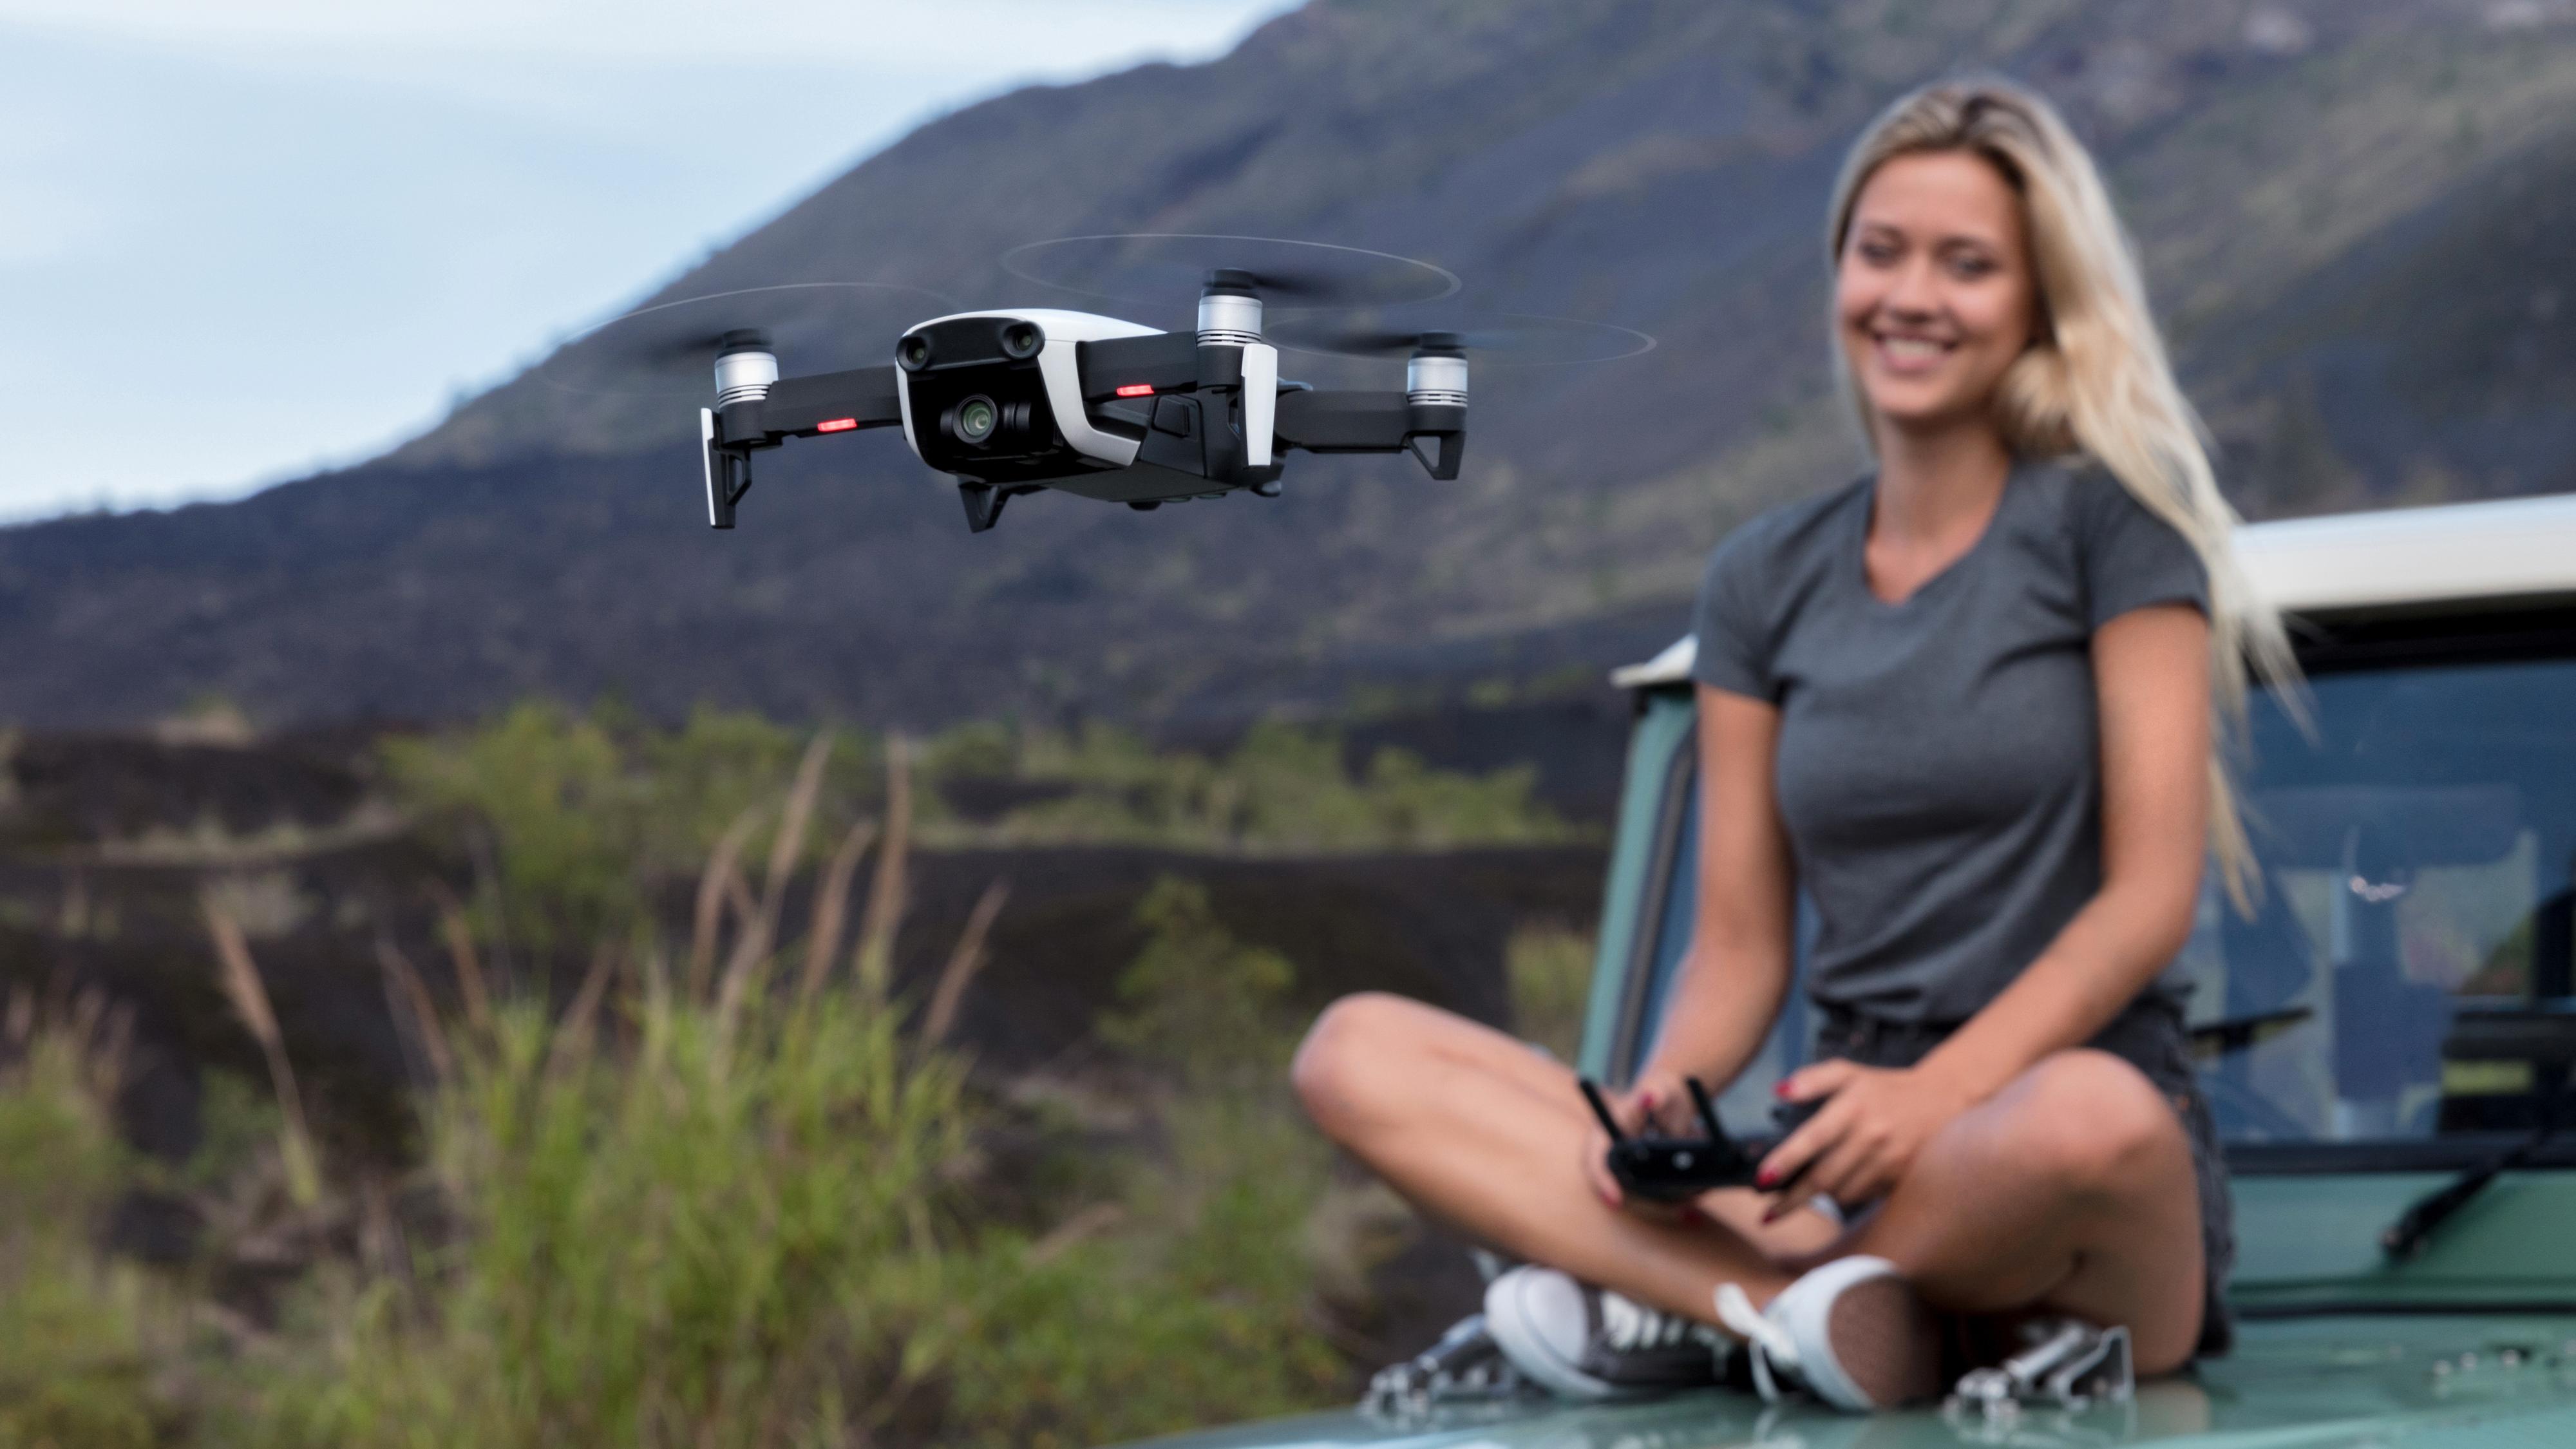 DJIs nye drone er en liten tass med 4K-oppløsning